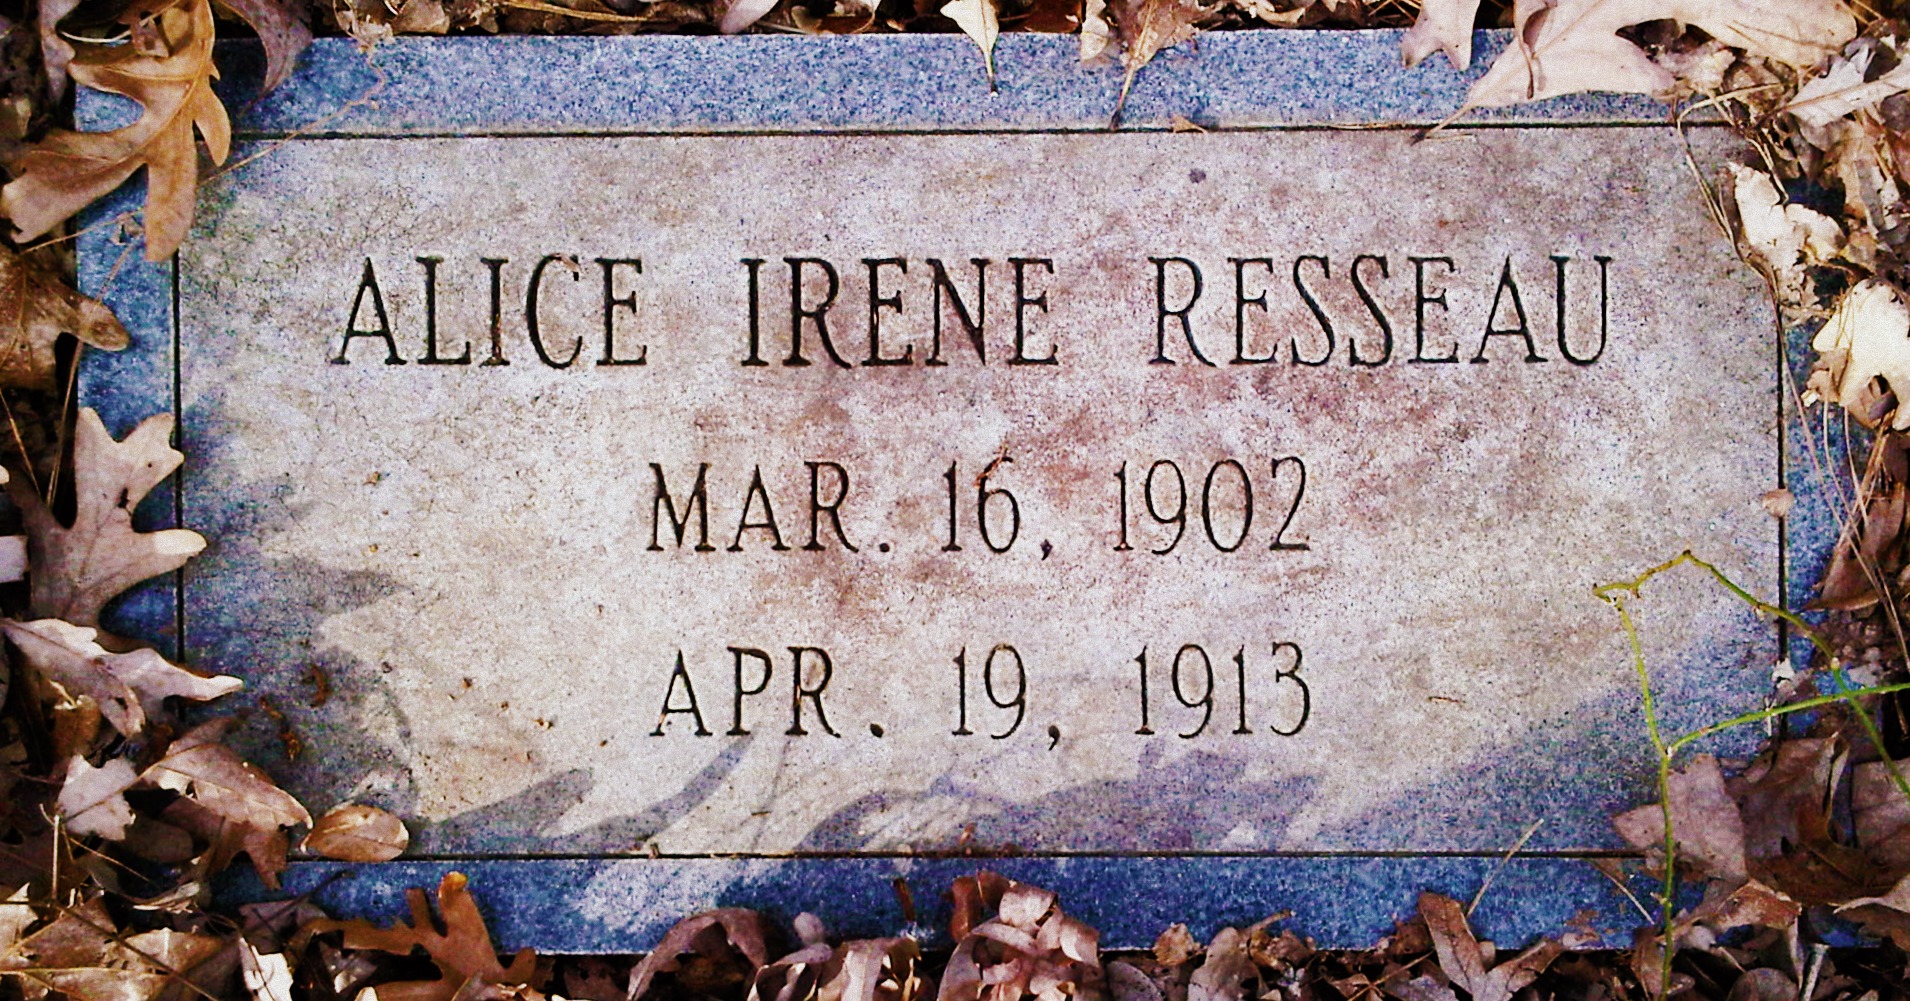 Alice Irene Resseau